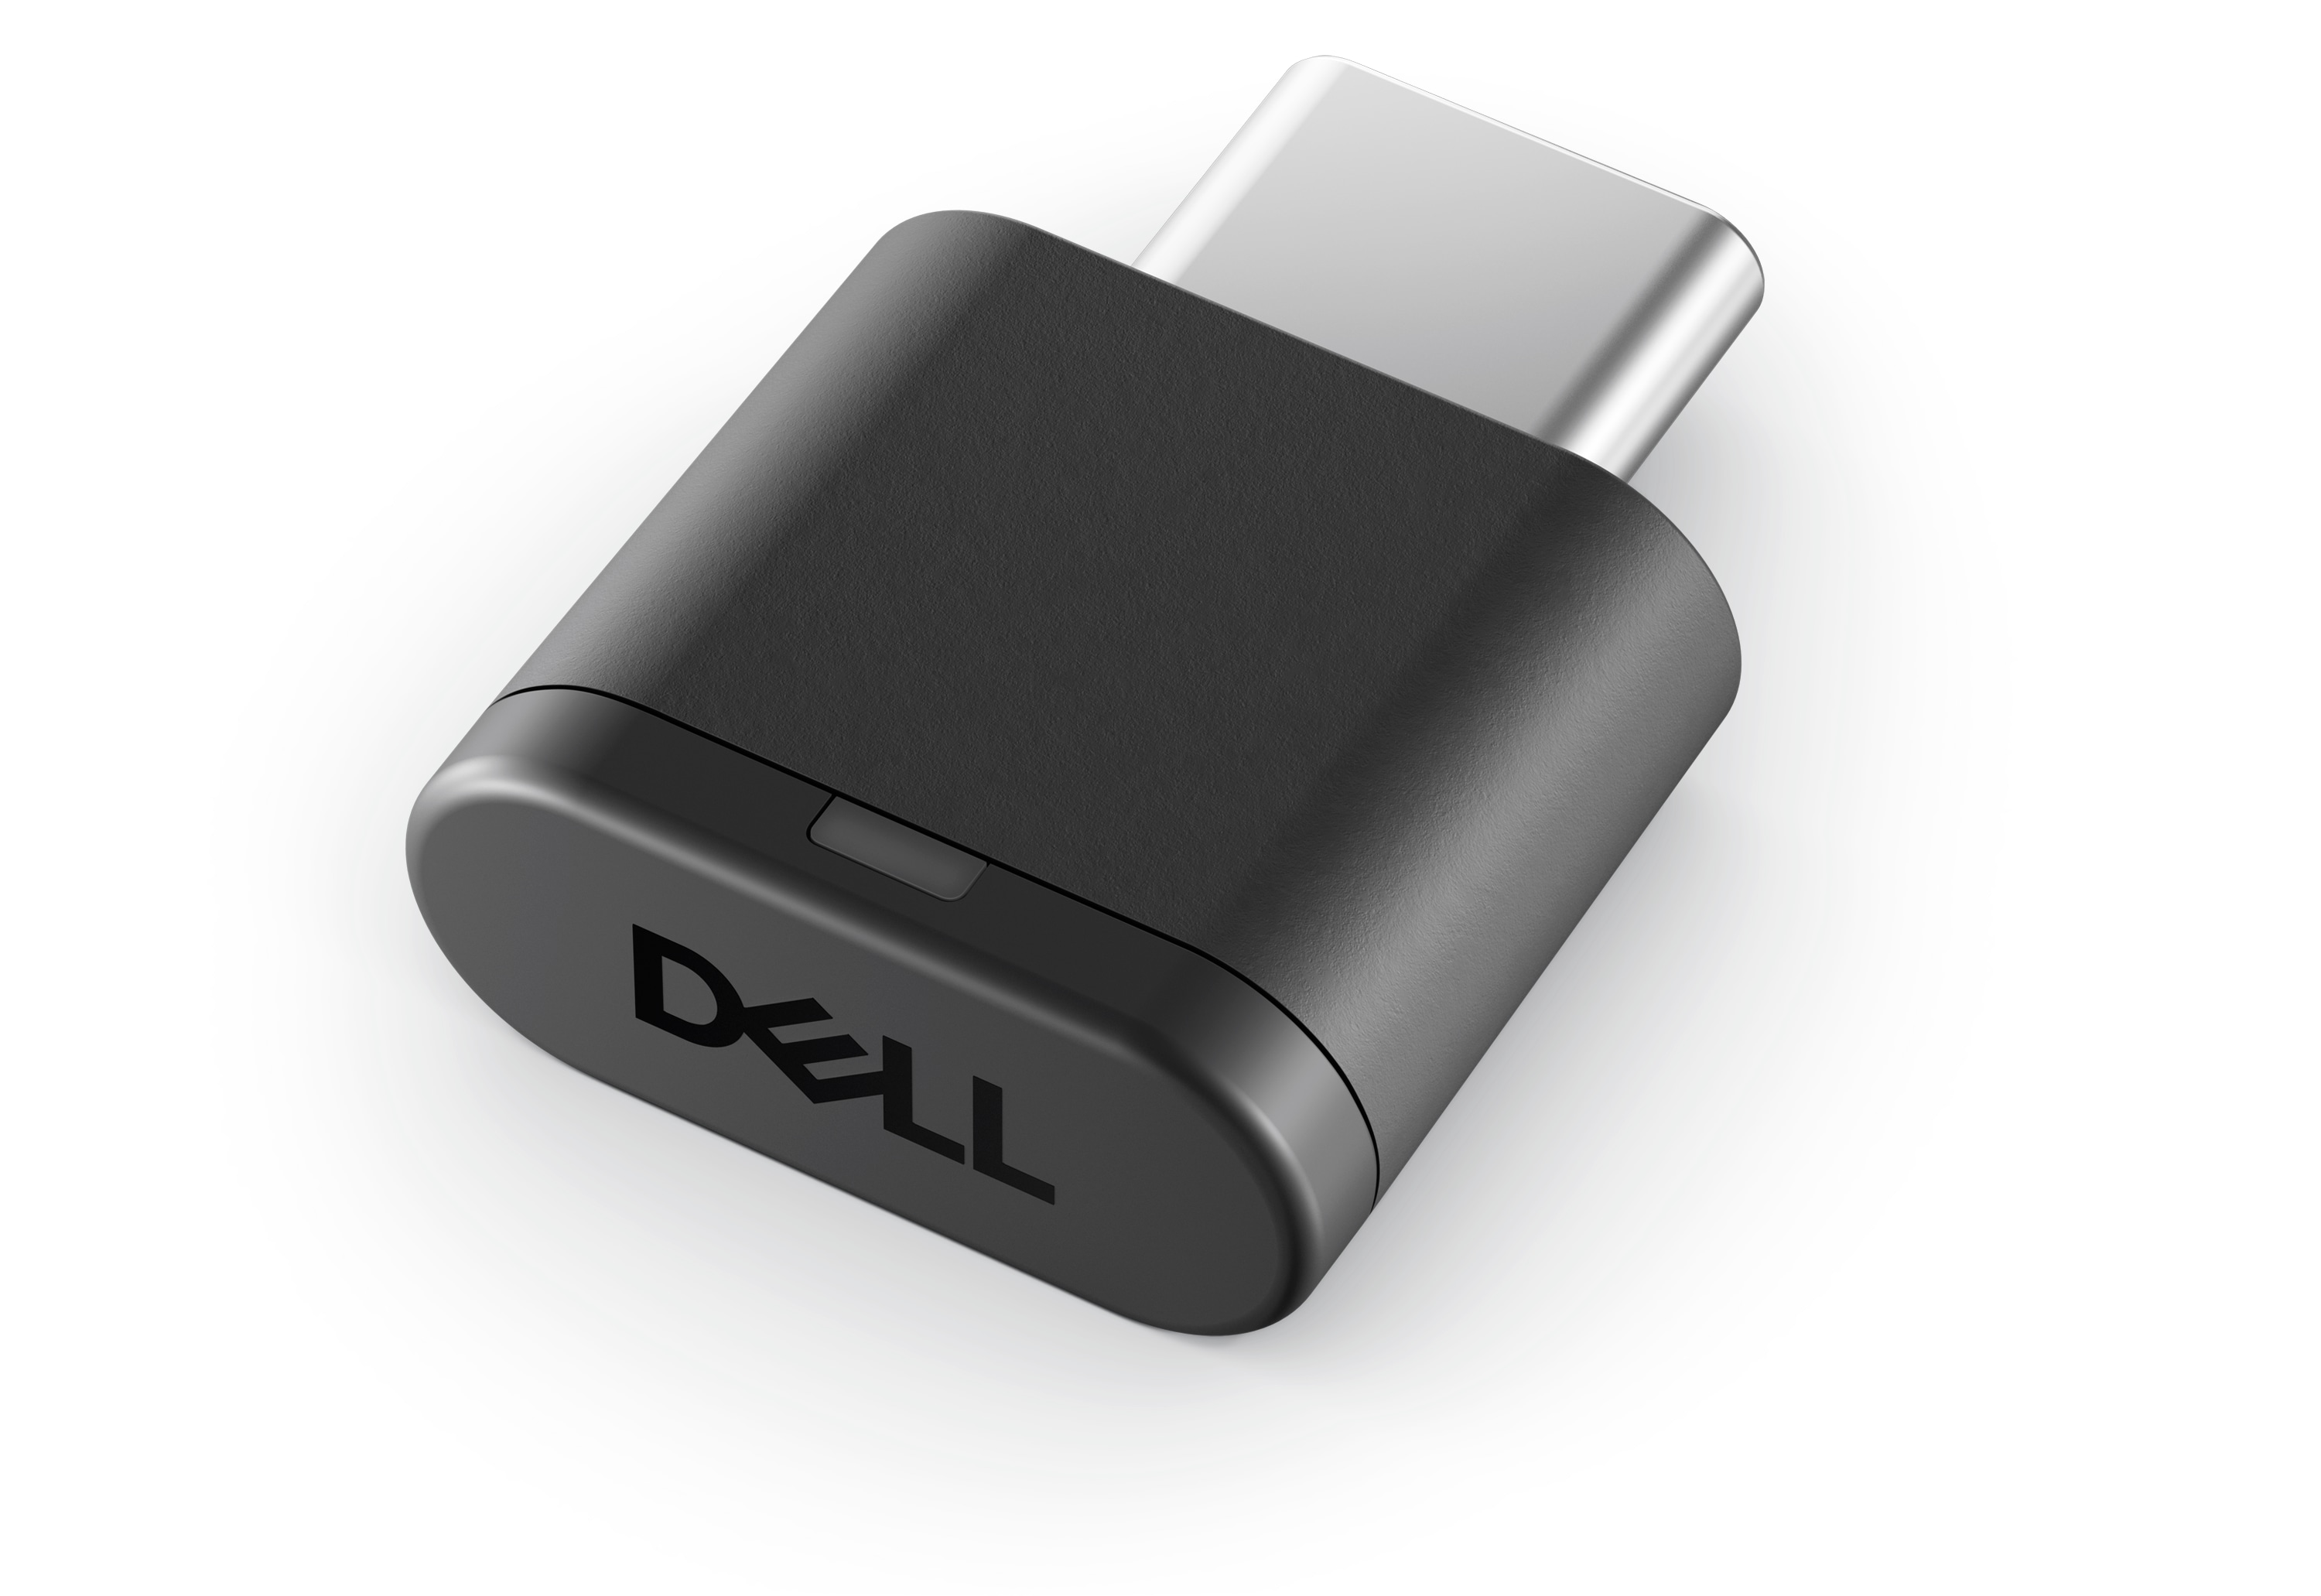 Casque sans fil Dell Premier - Comparaison audio - Suppression de bruit normal